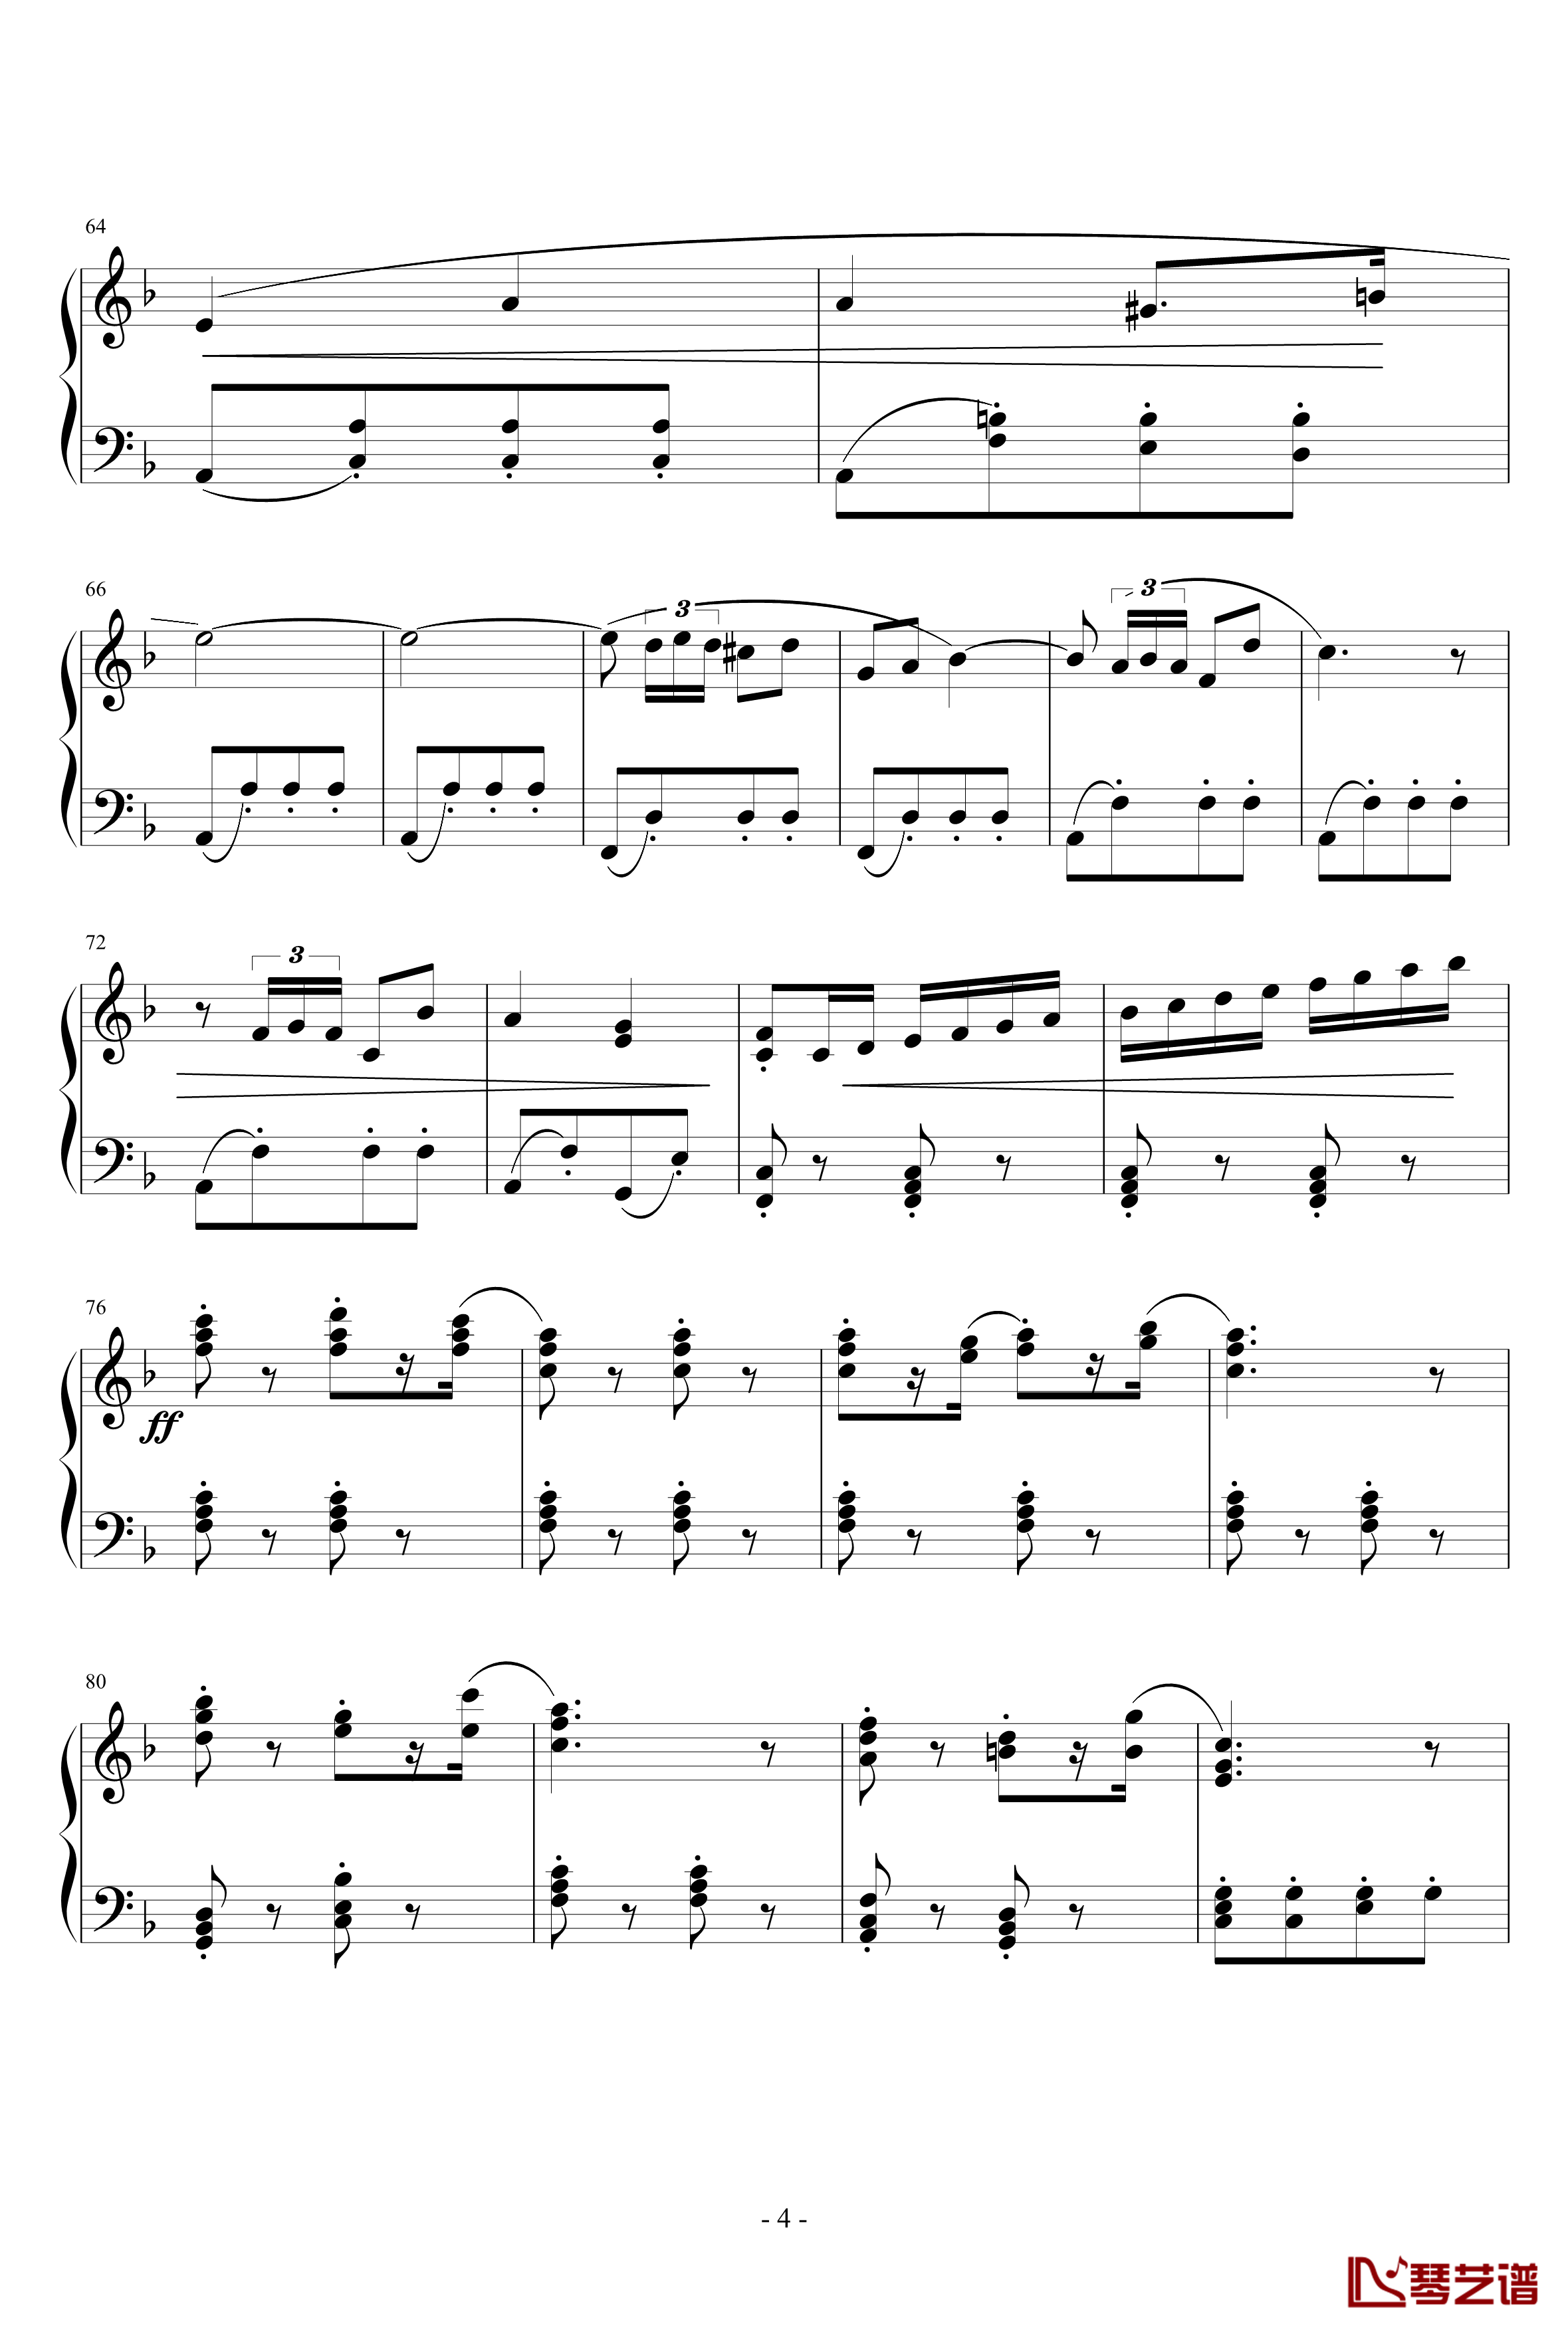 卡门序曲钢琴谱-完整版-比才-Bizet4